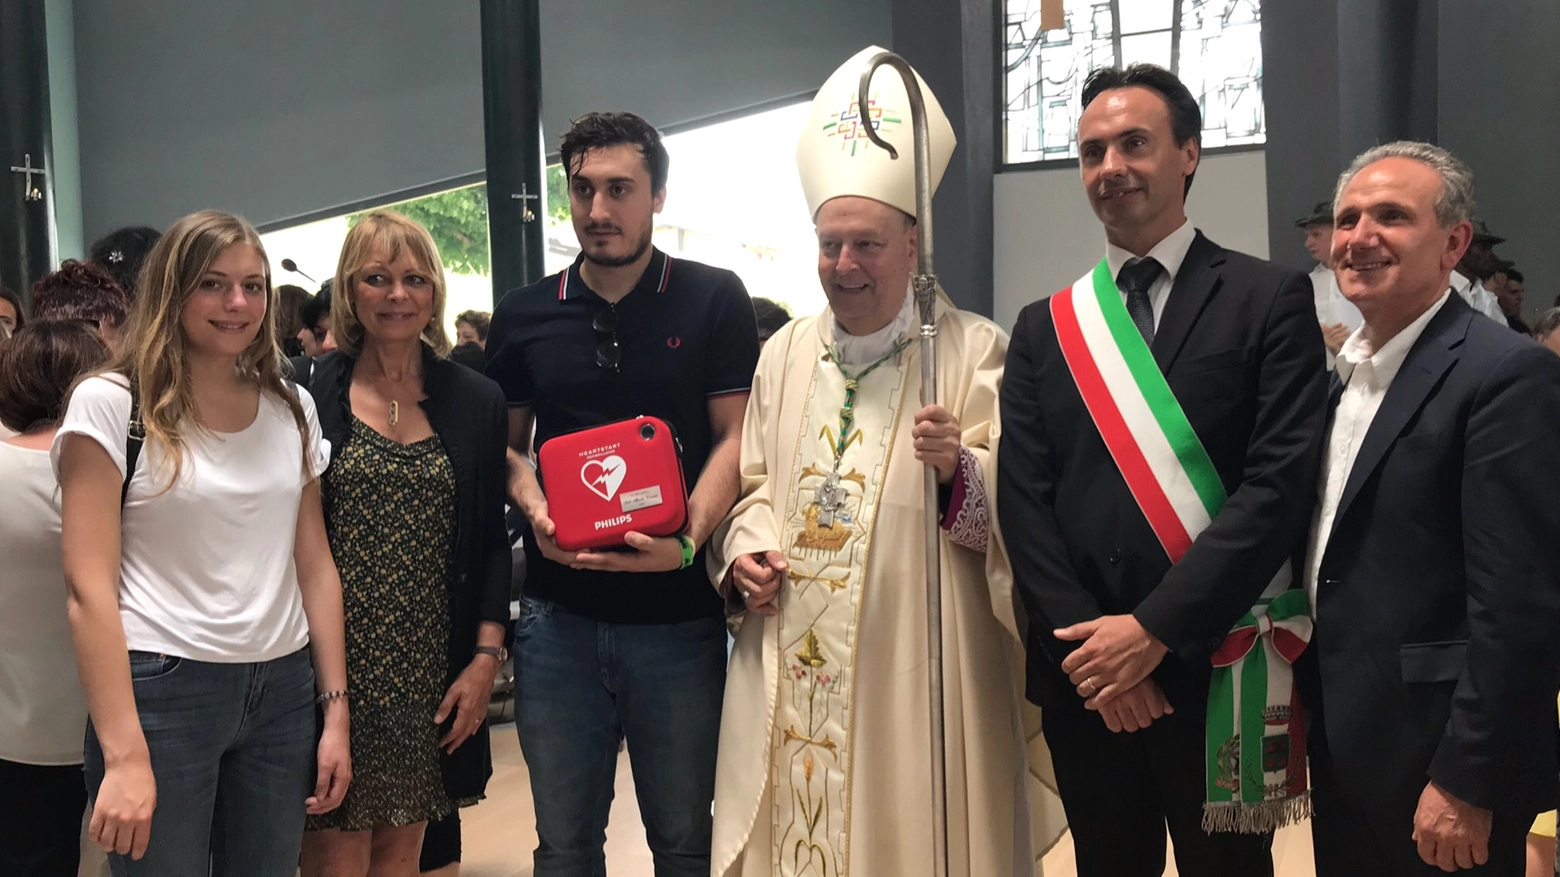 Il defibrillatore donato alla presenza del vescovo Oscar Cantoni